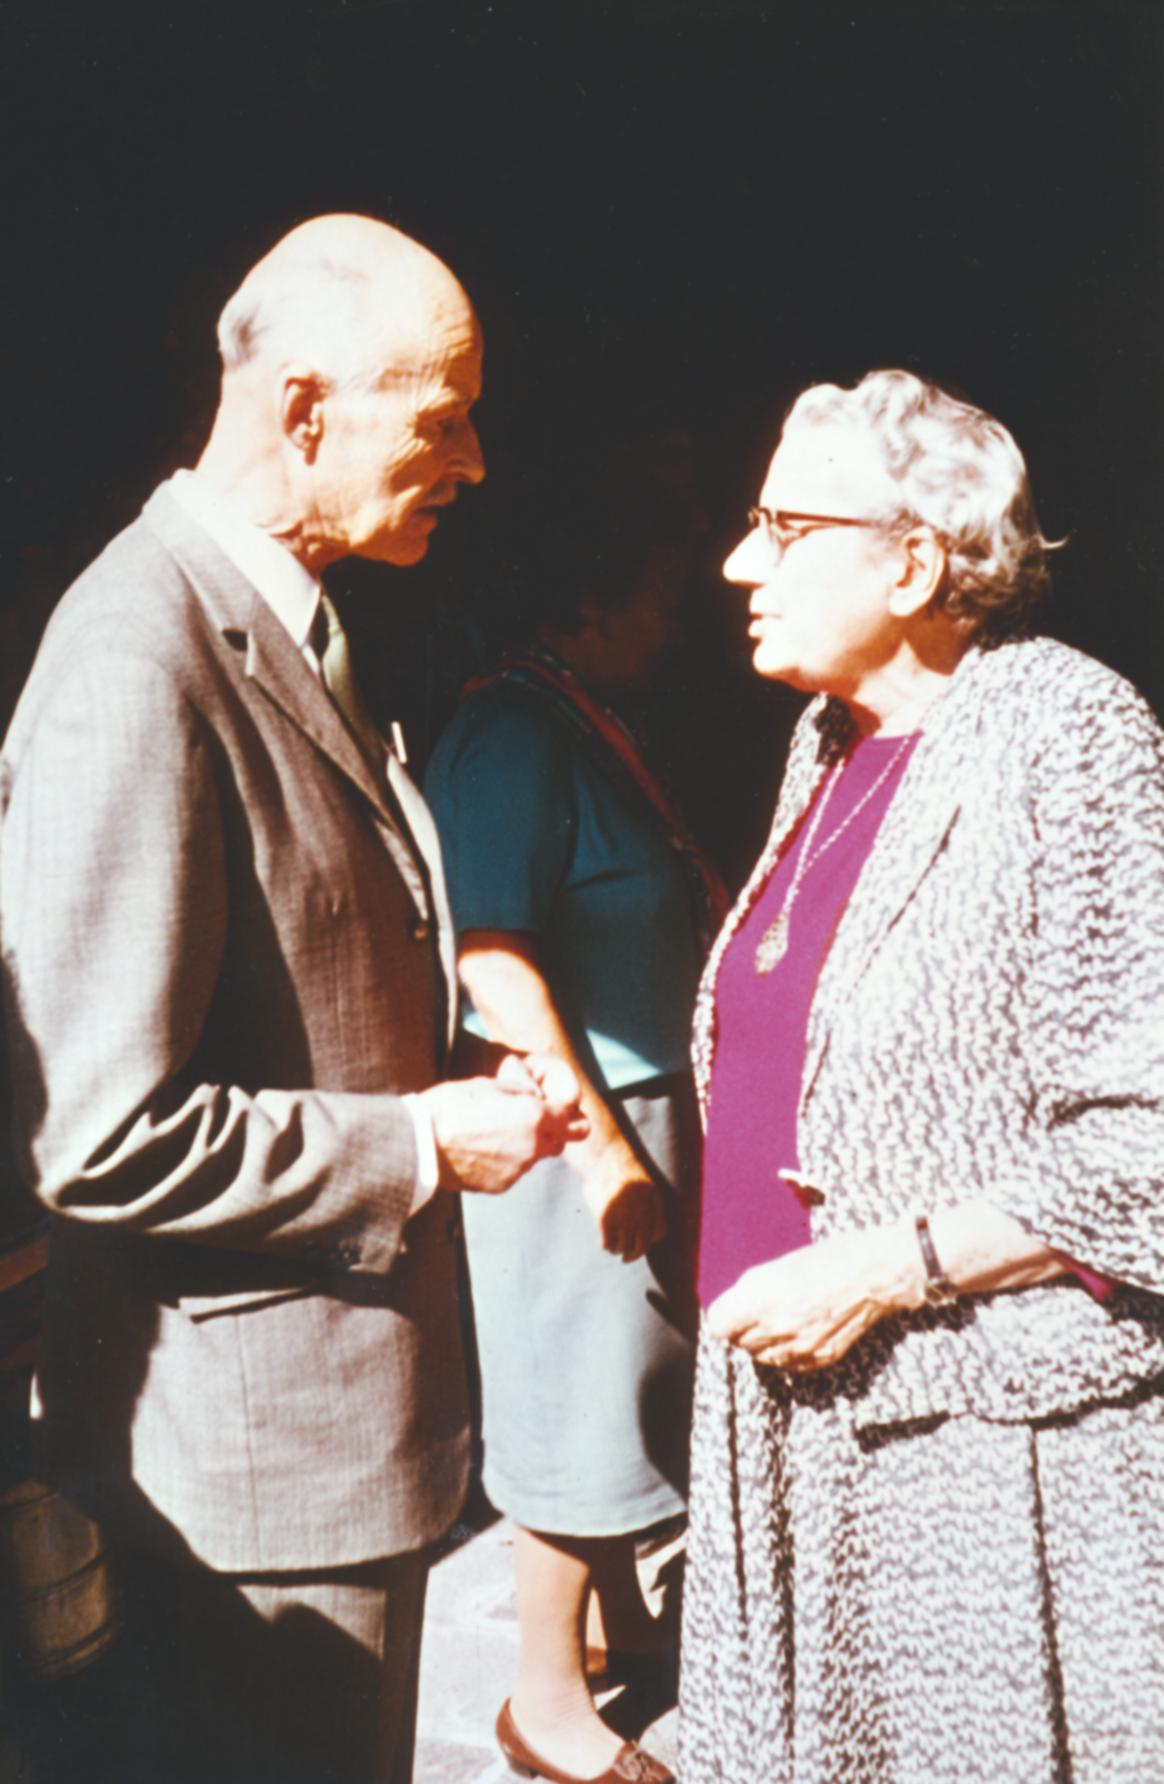 V. Internat. Imago Mundi-Kongress 1974, Cusanus Akademie, Brixen, Dr. Gerda Walther im Gespräch mit dem Verleger Guilleaume